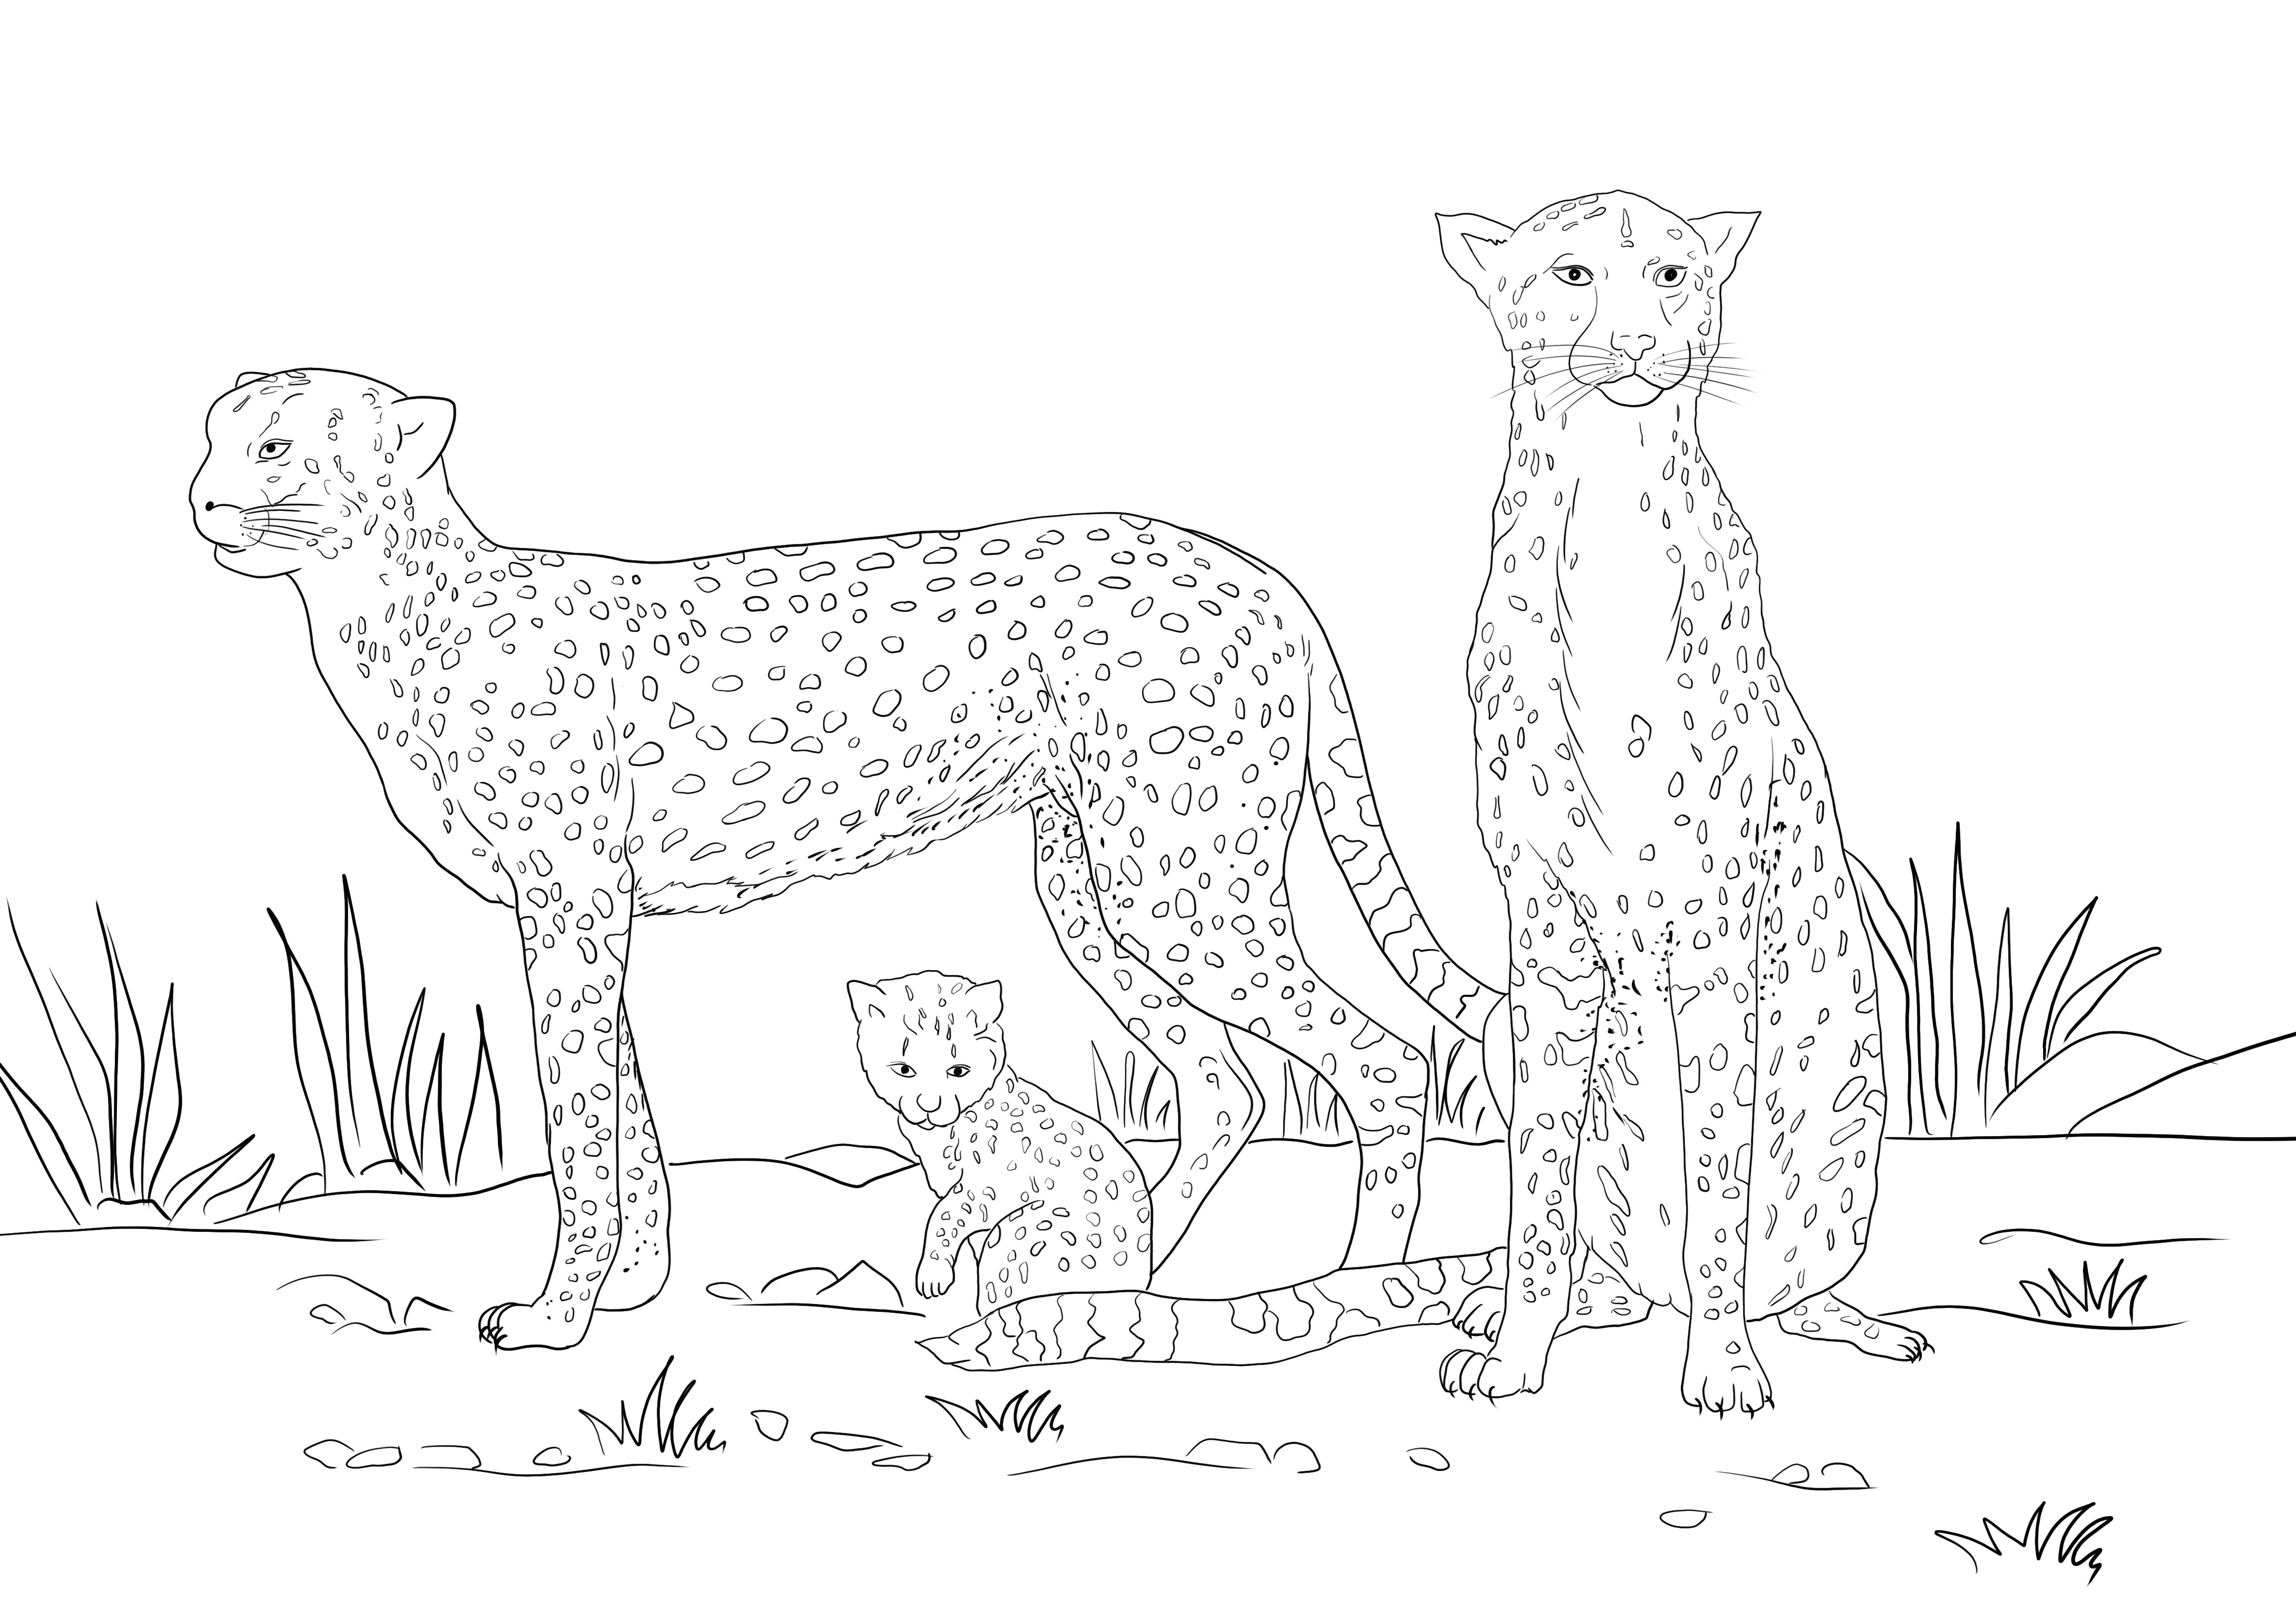 Tässä on ilmainen resurssi gepardiperheen kuvien värittämiseen ilmaiseksi